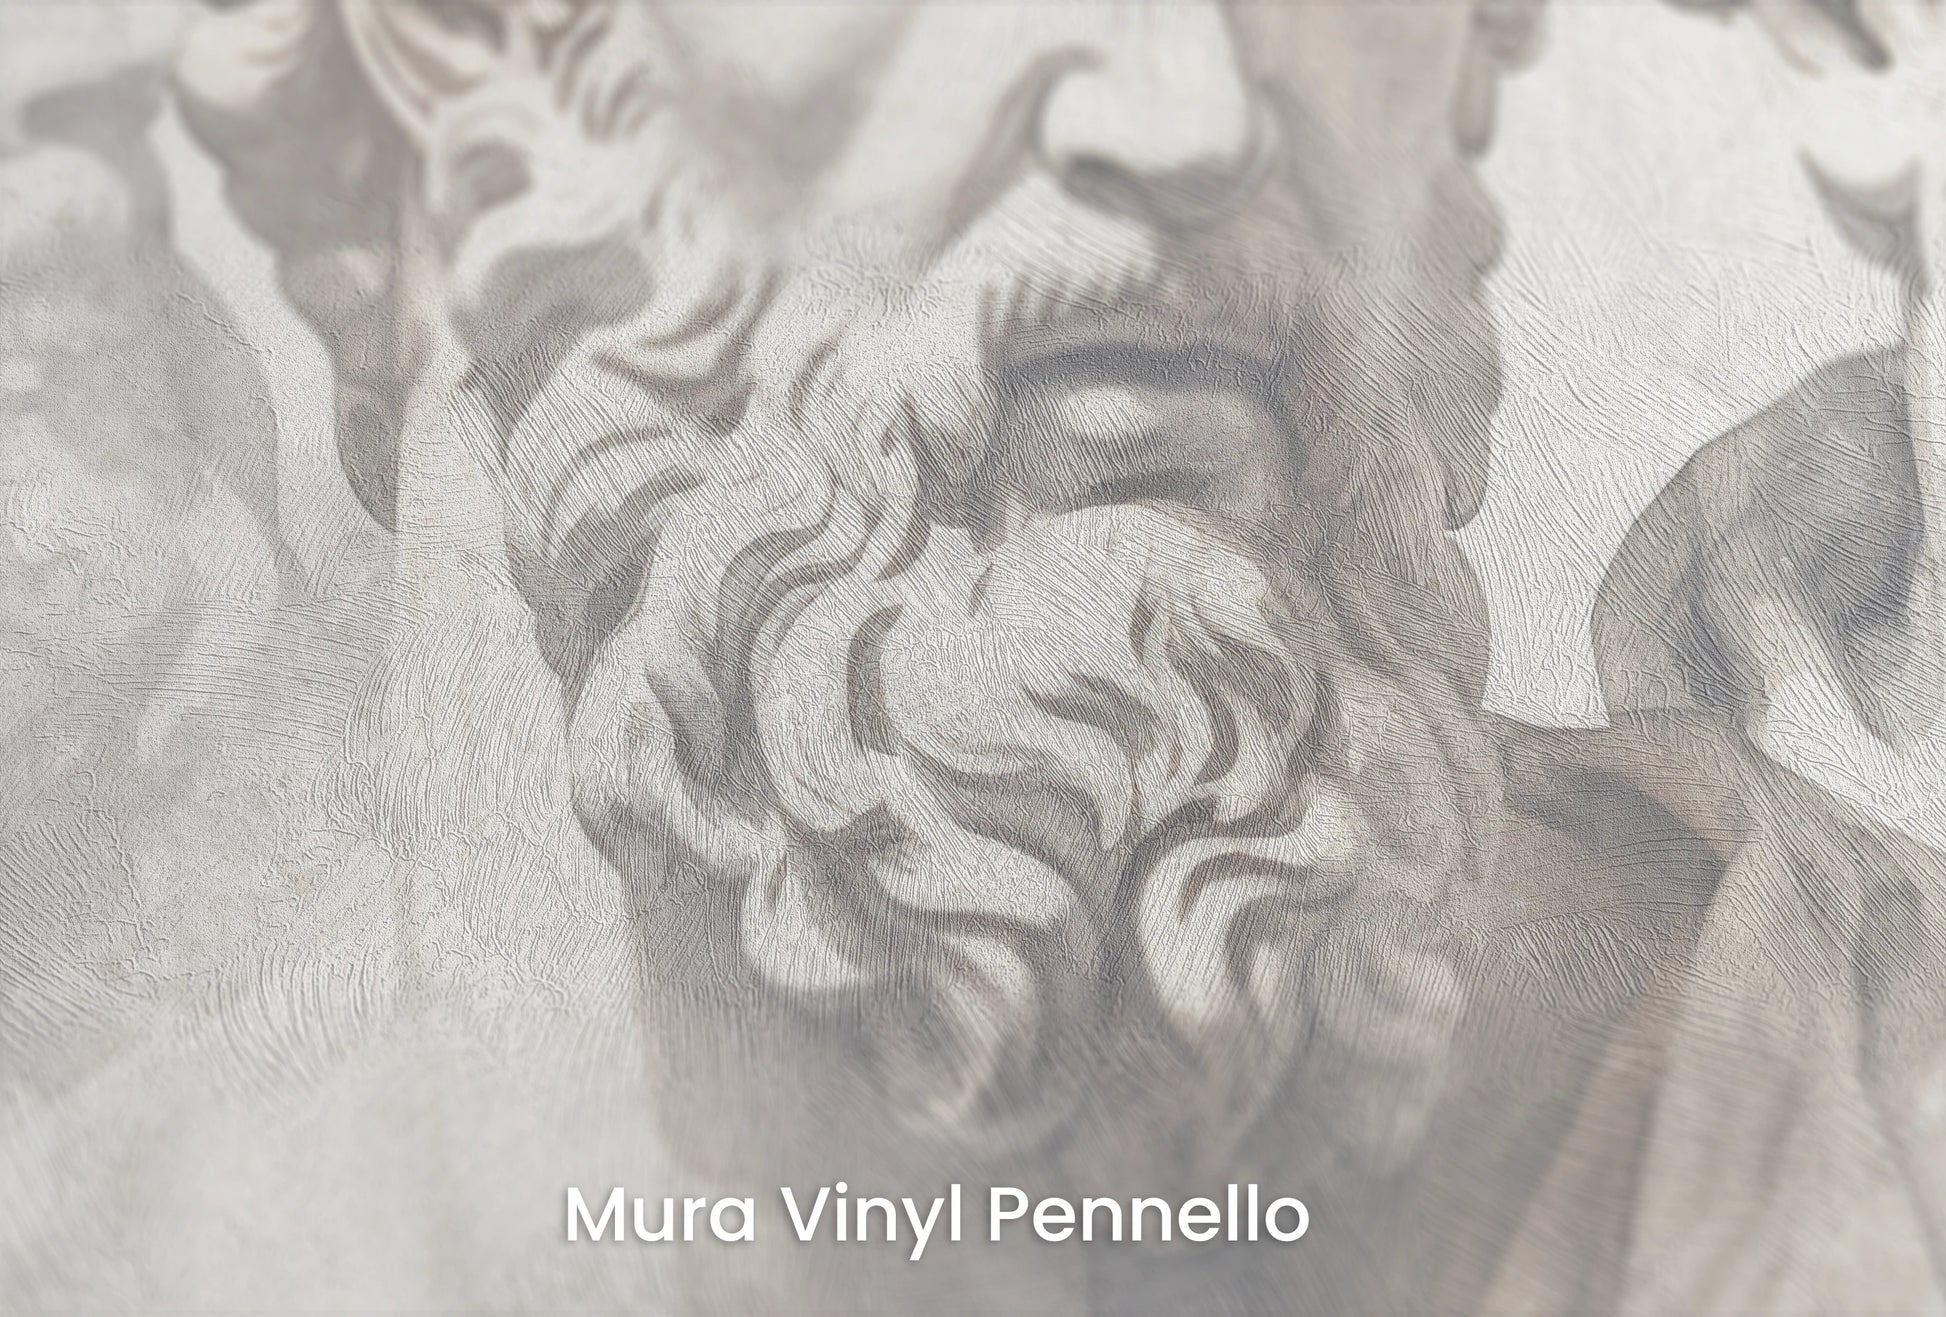 Zbliżenie na artystyczną fototapetę o nazwie Stoic's Resolve na podłożu Mura Vinyl Pennello - faktura pociągnięć pędzla malarskiego.